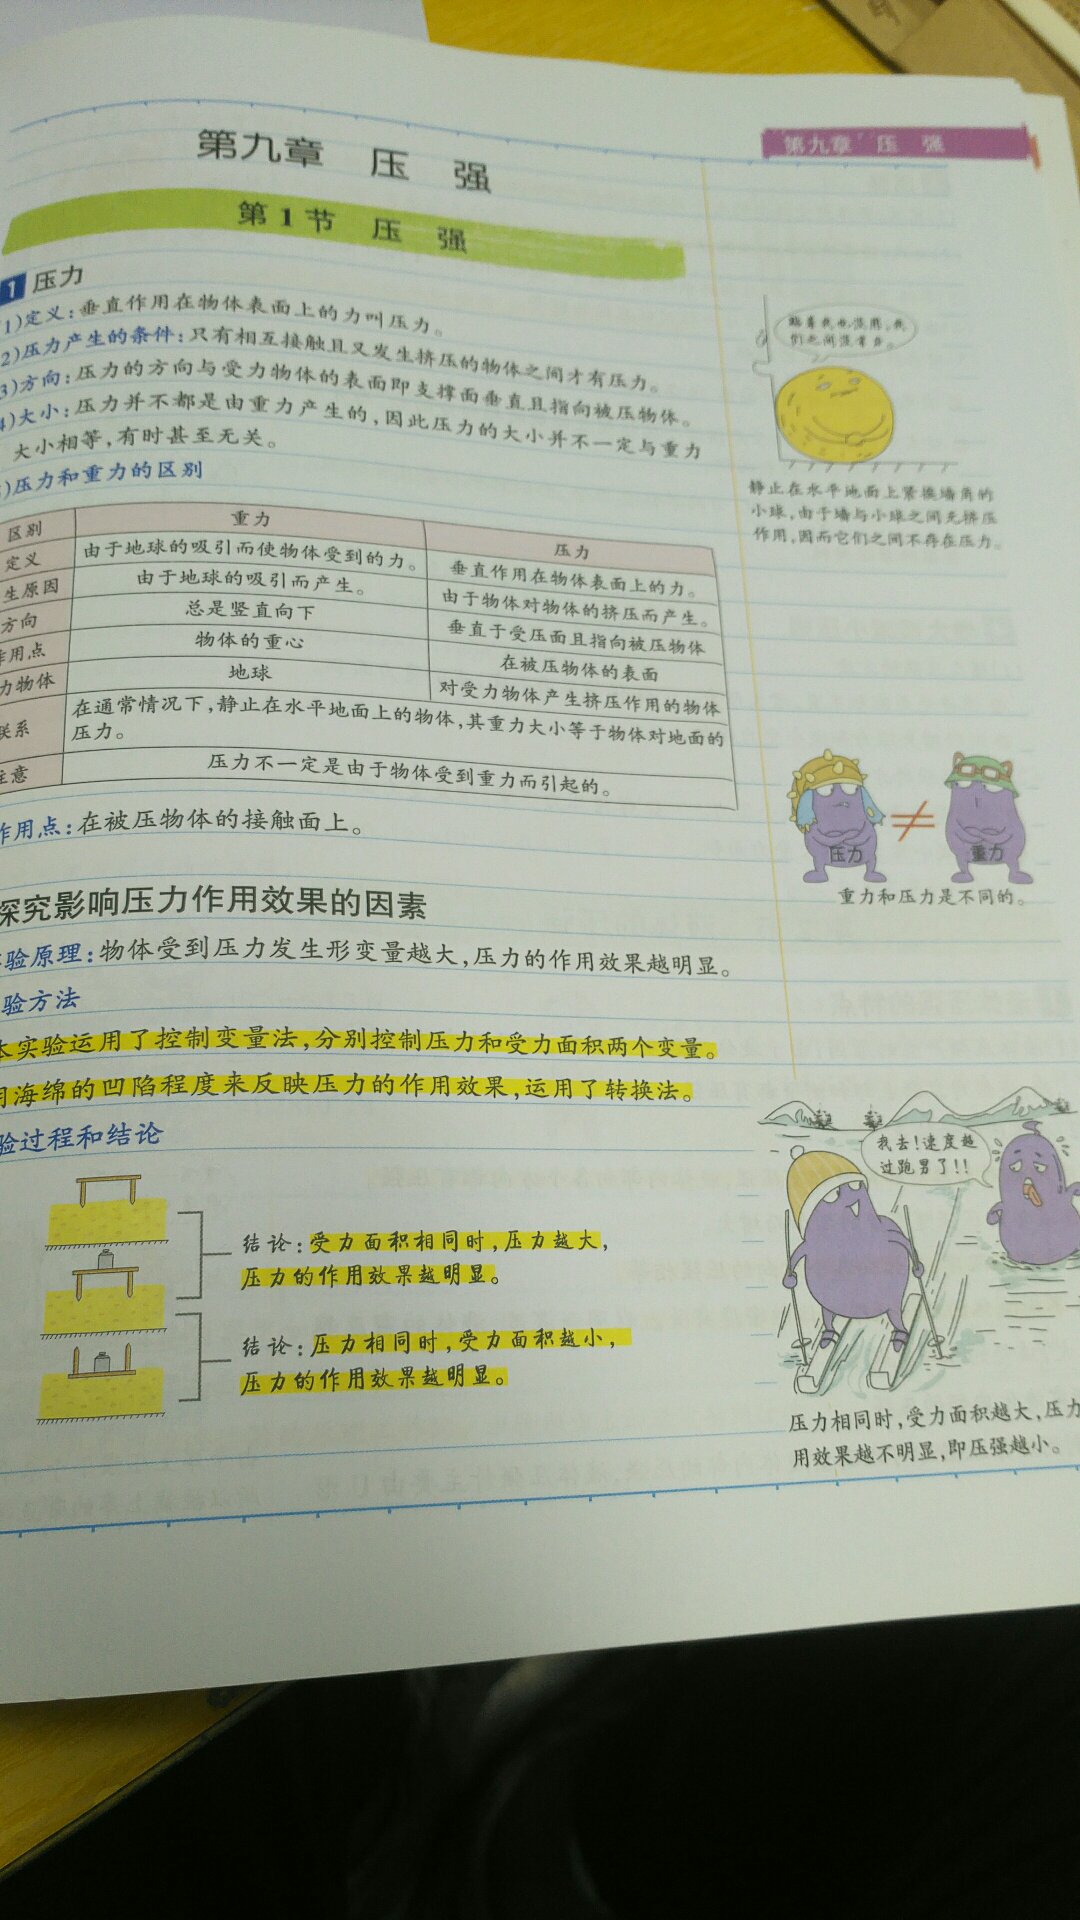 很不错的一本知识笔记，彩色看起来很舒服，学生很喜欢，看过后理解上加深了，物理，化学，生物，各有一本了